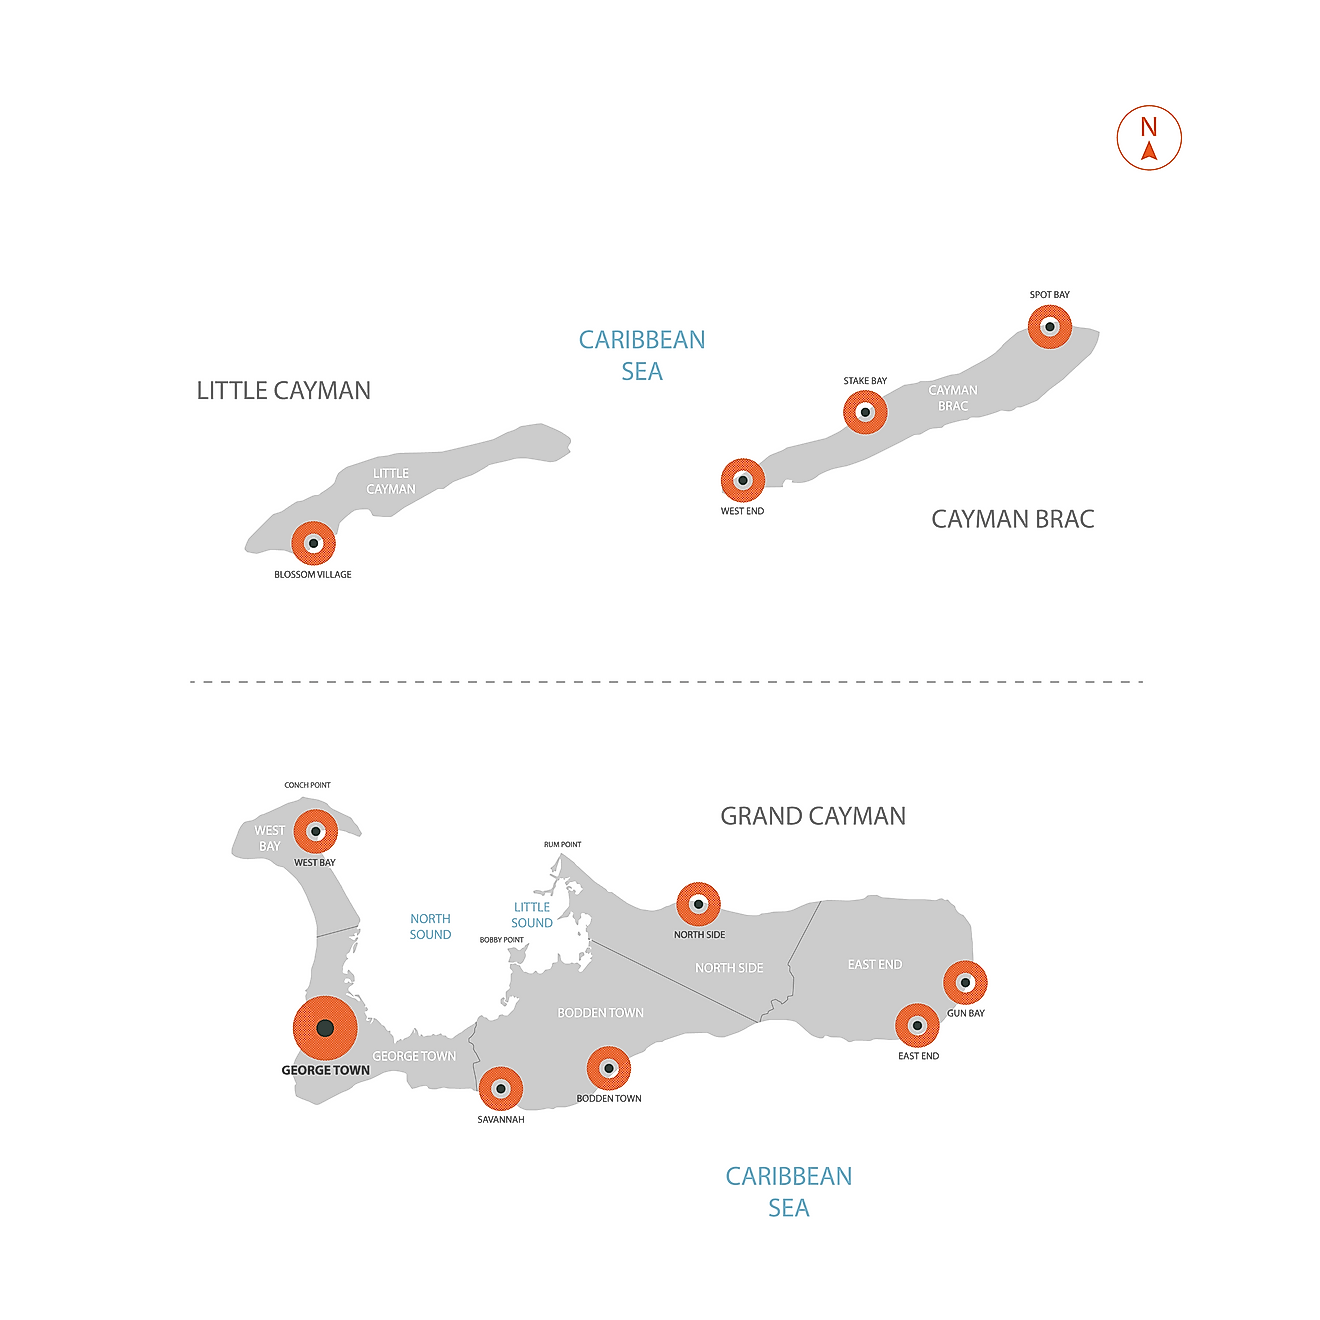 Mapa Político de las Islas Caimán mostrando sus 6 distritos y la ciudad capital - George Town